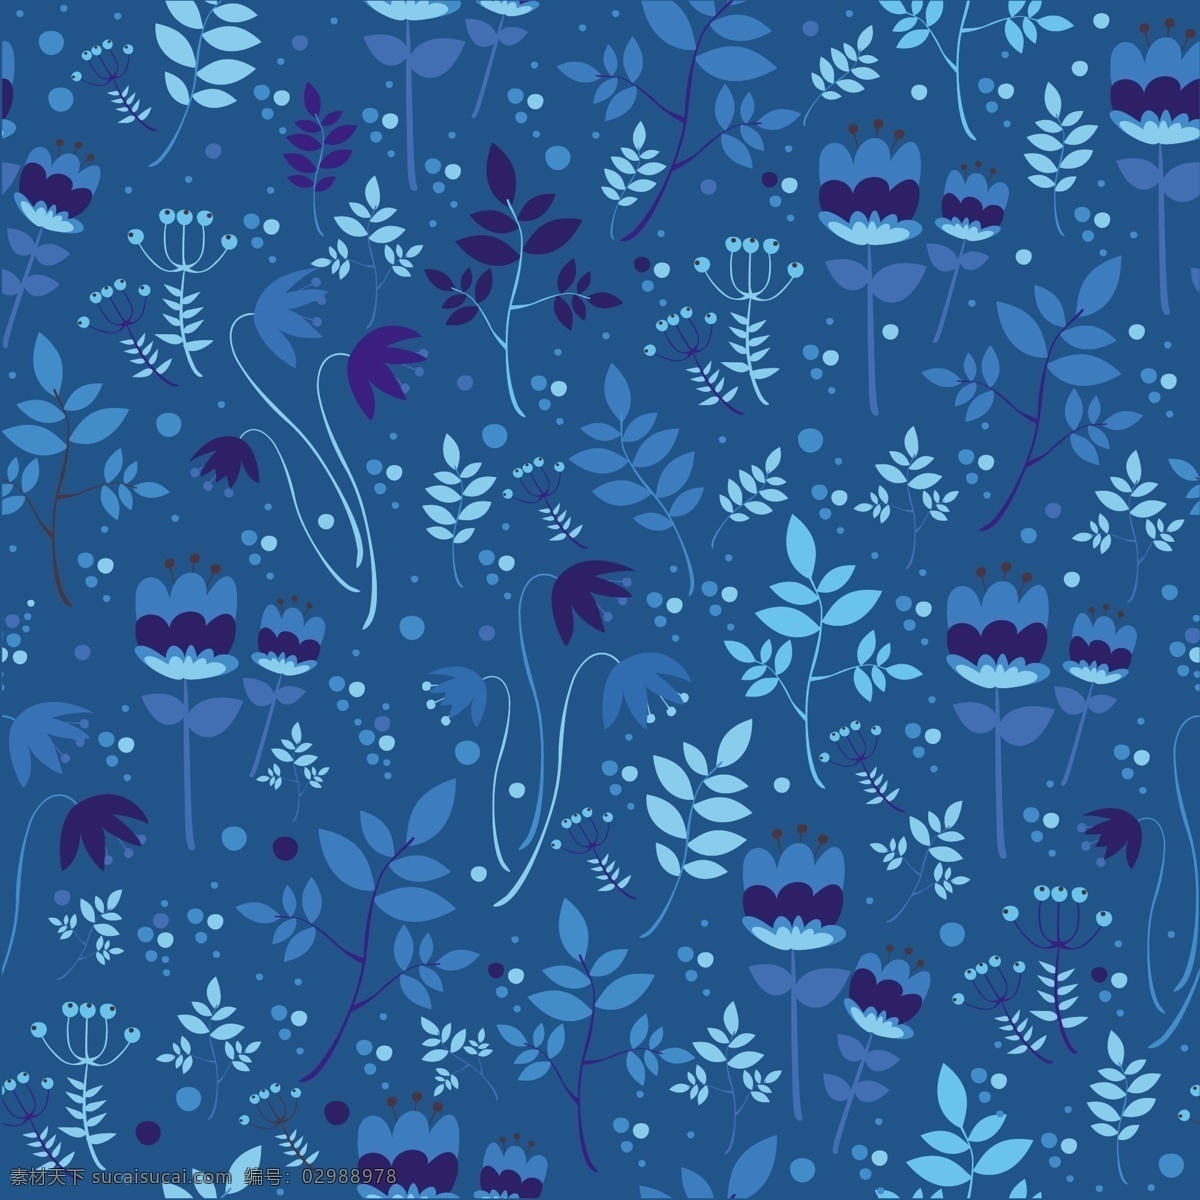 花卉图案设计 背景 图案 花卉 蓝色背景 树叶 自然 花卉背景 蓝色 花卉图案 墙纸 颜色 丰富多彩 无缝模式